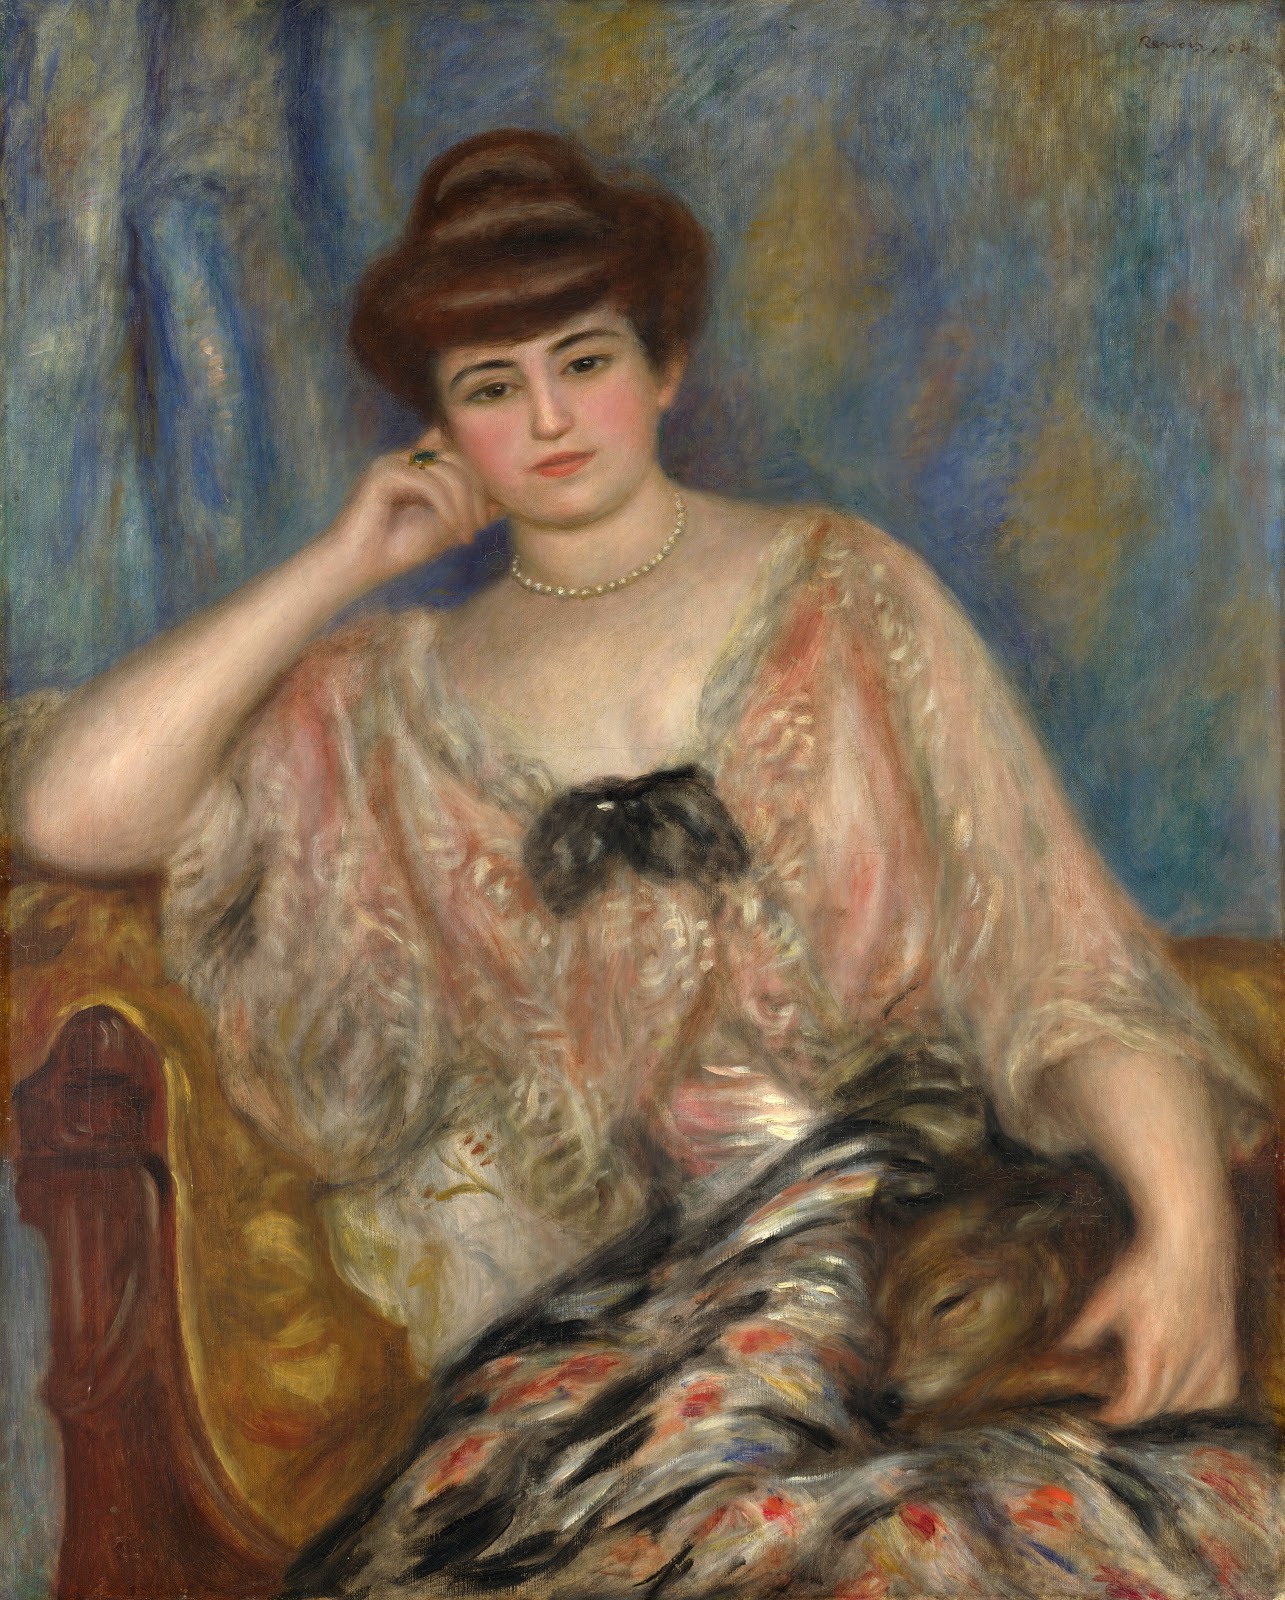 Pierre+Auguste+Renoir-1841-1-19 (837).jpg